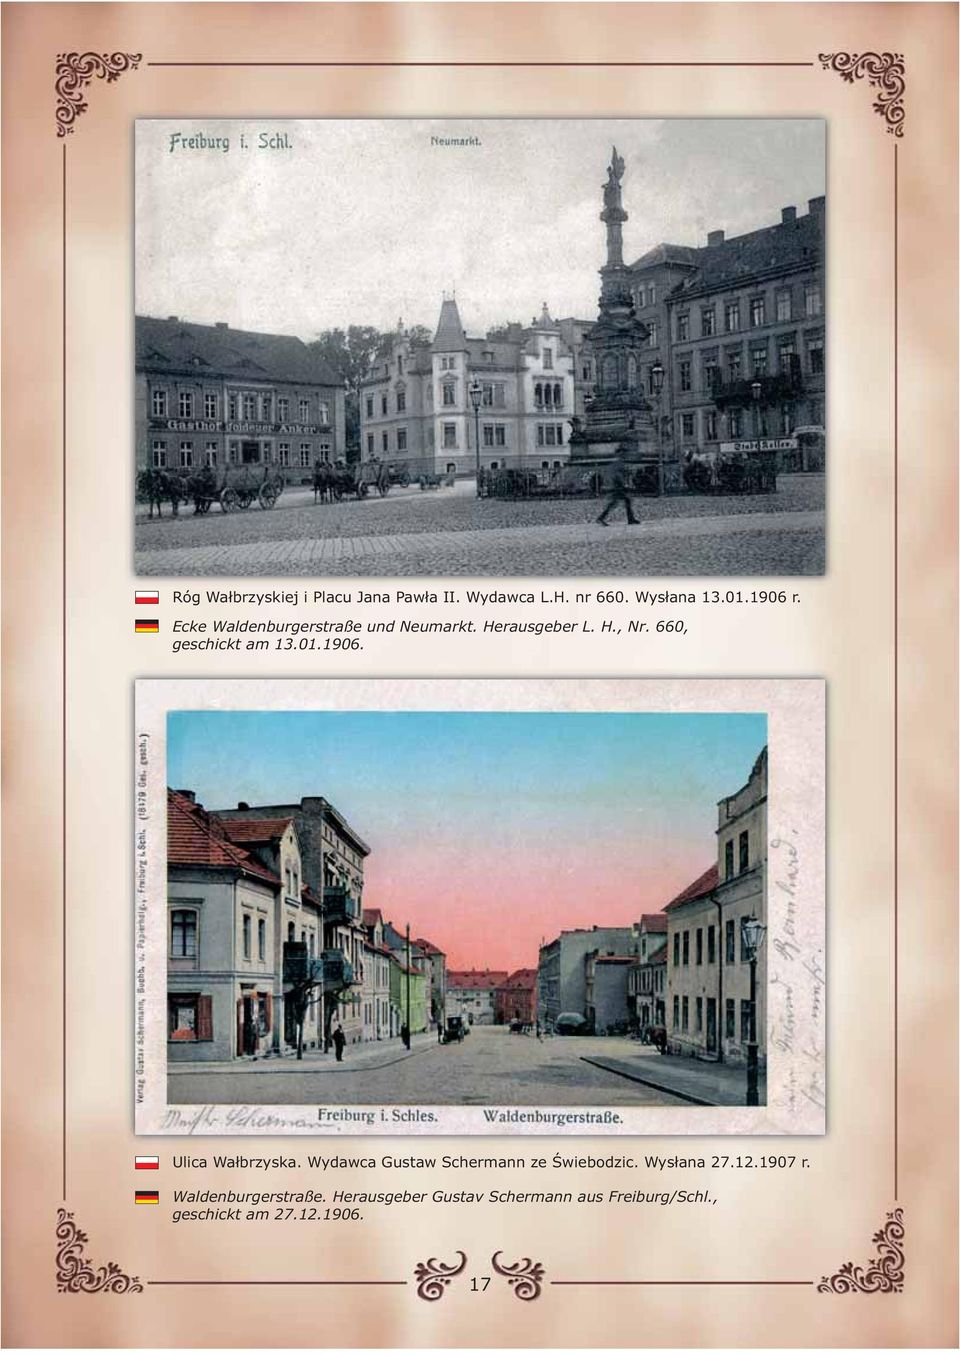 1906. Ulica Wałbrzyska. Wydawca Gustaw Schermann ze Świebodzic. Wysłana 27.12.1907 r.